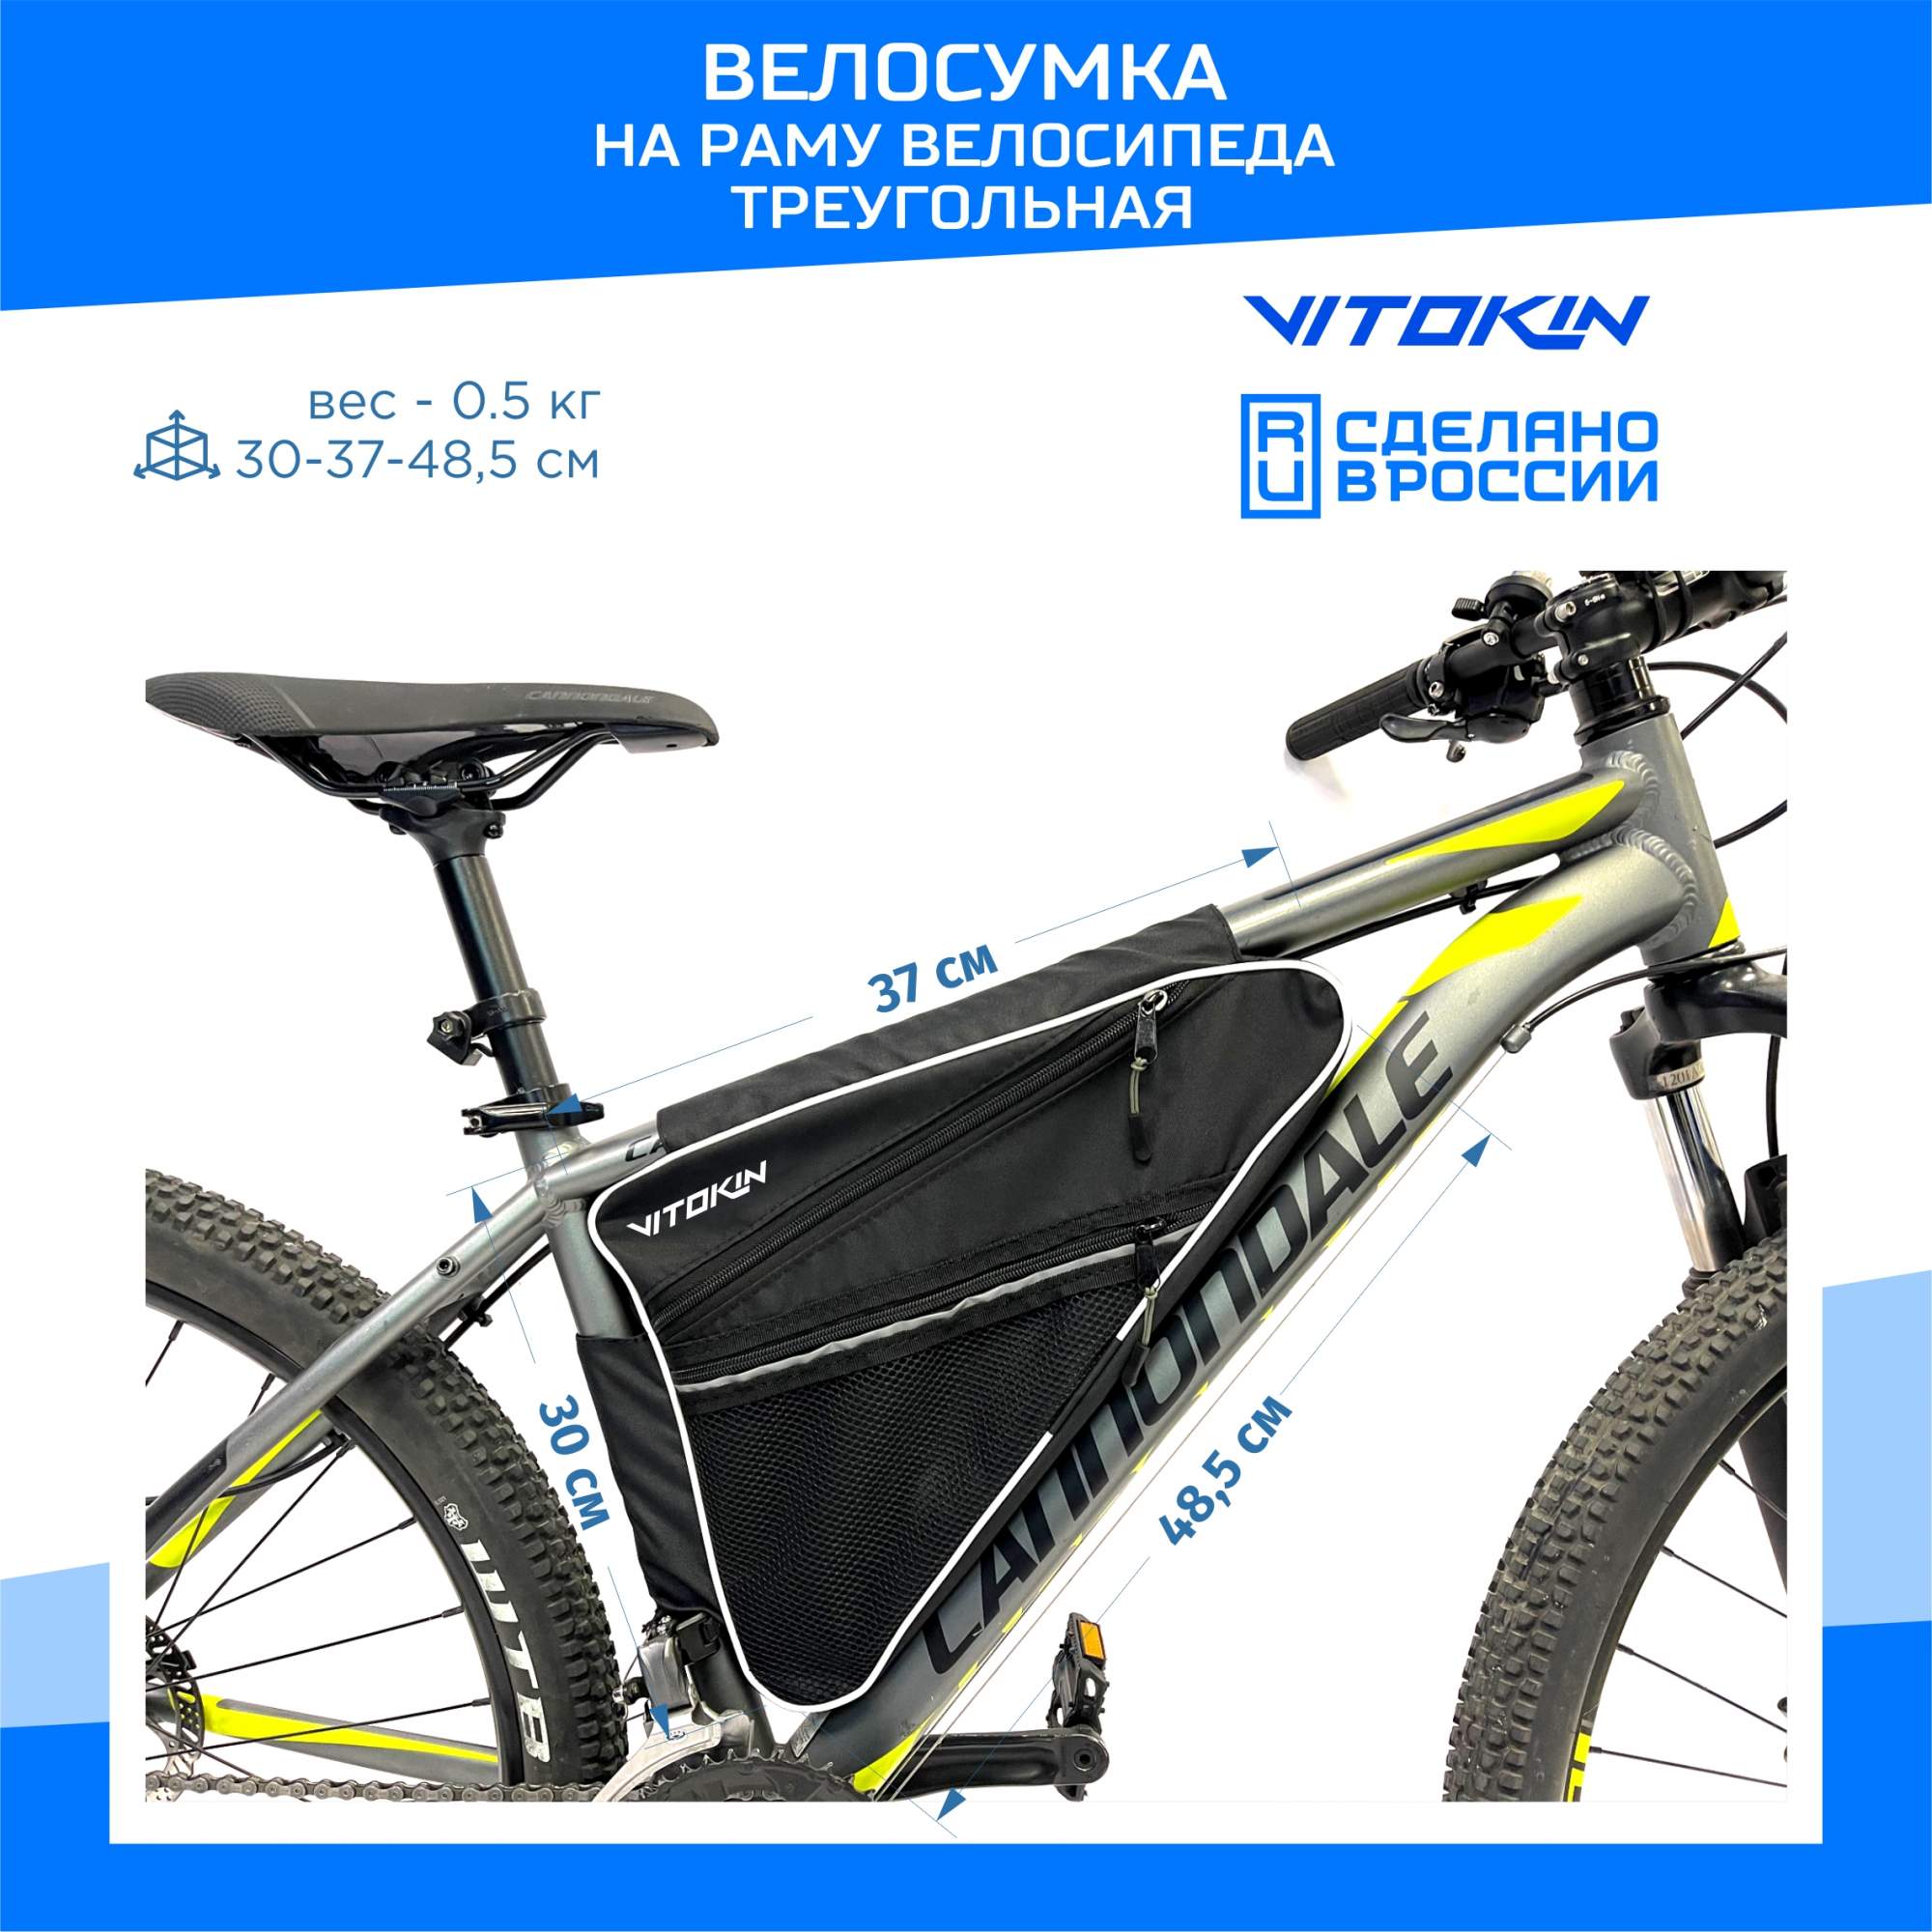 Велосумка VITOKIN на раму большая для велосипеда, треугольная черная